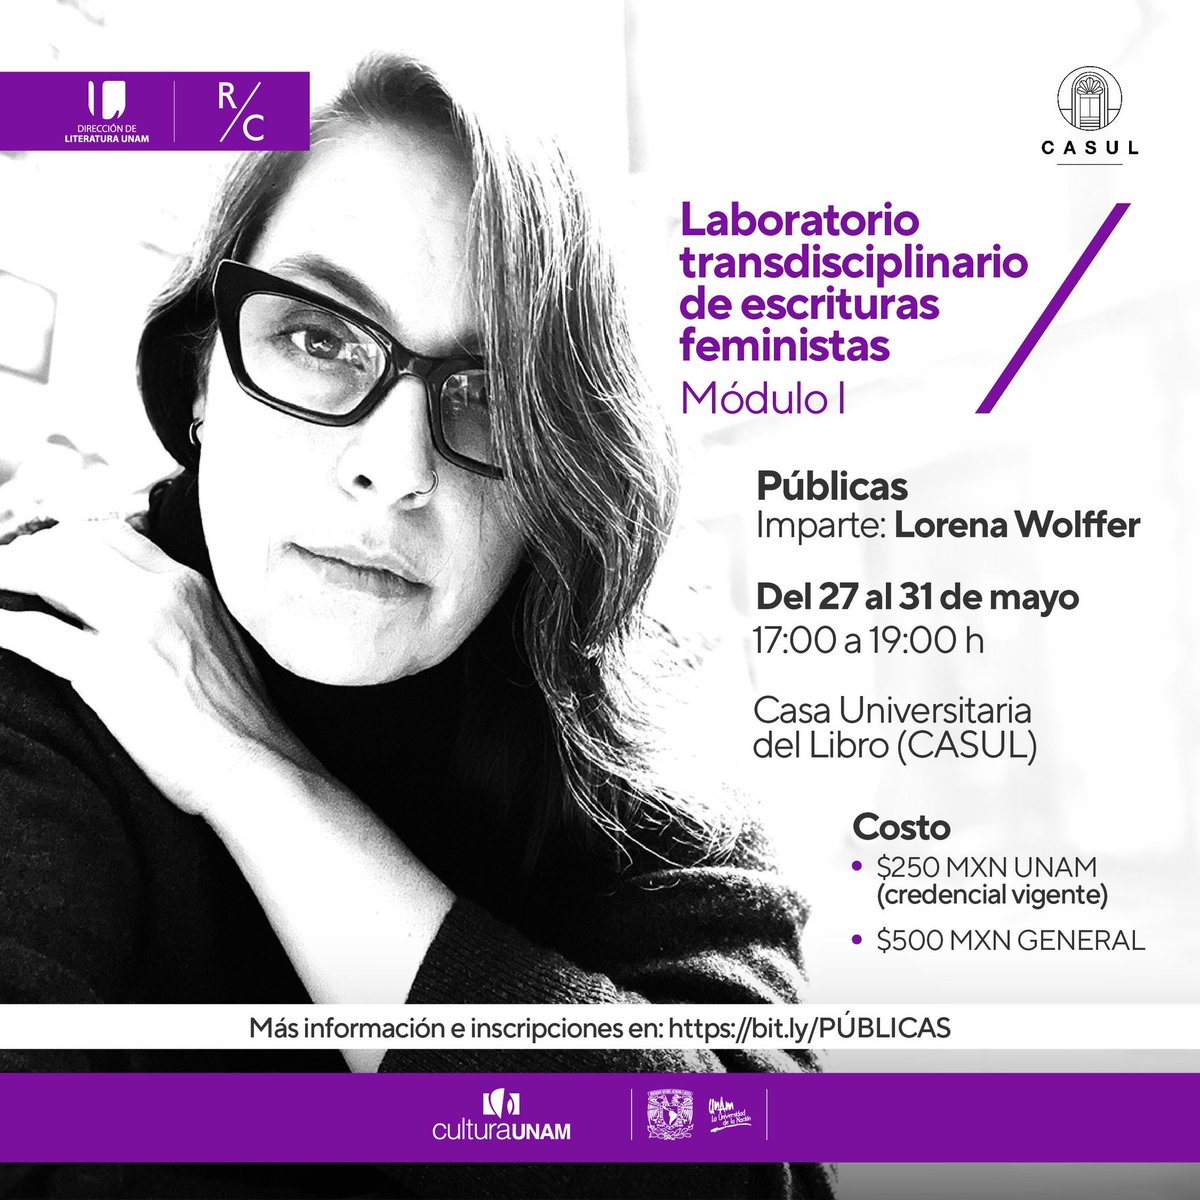 Laboratorio transdisciplinario de escrituras feministas Módulo I 🗓 Del 27 al 31 de mayo ⏰ 17:00 hrs. @casulunam @CulturaUNAM || #CASUL #CulturaUNAM #UNAM